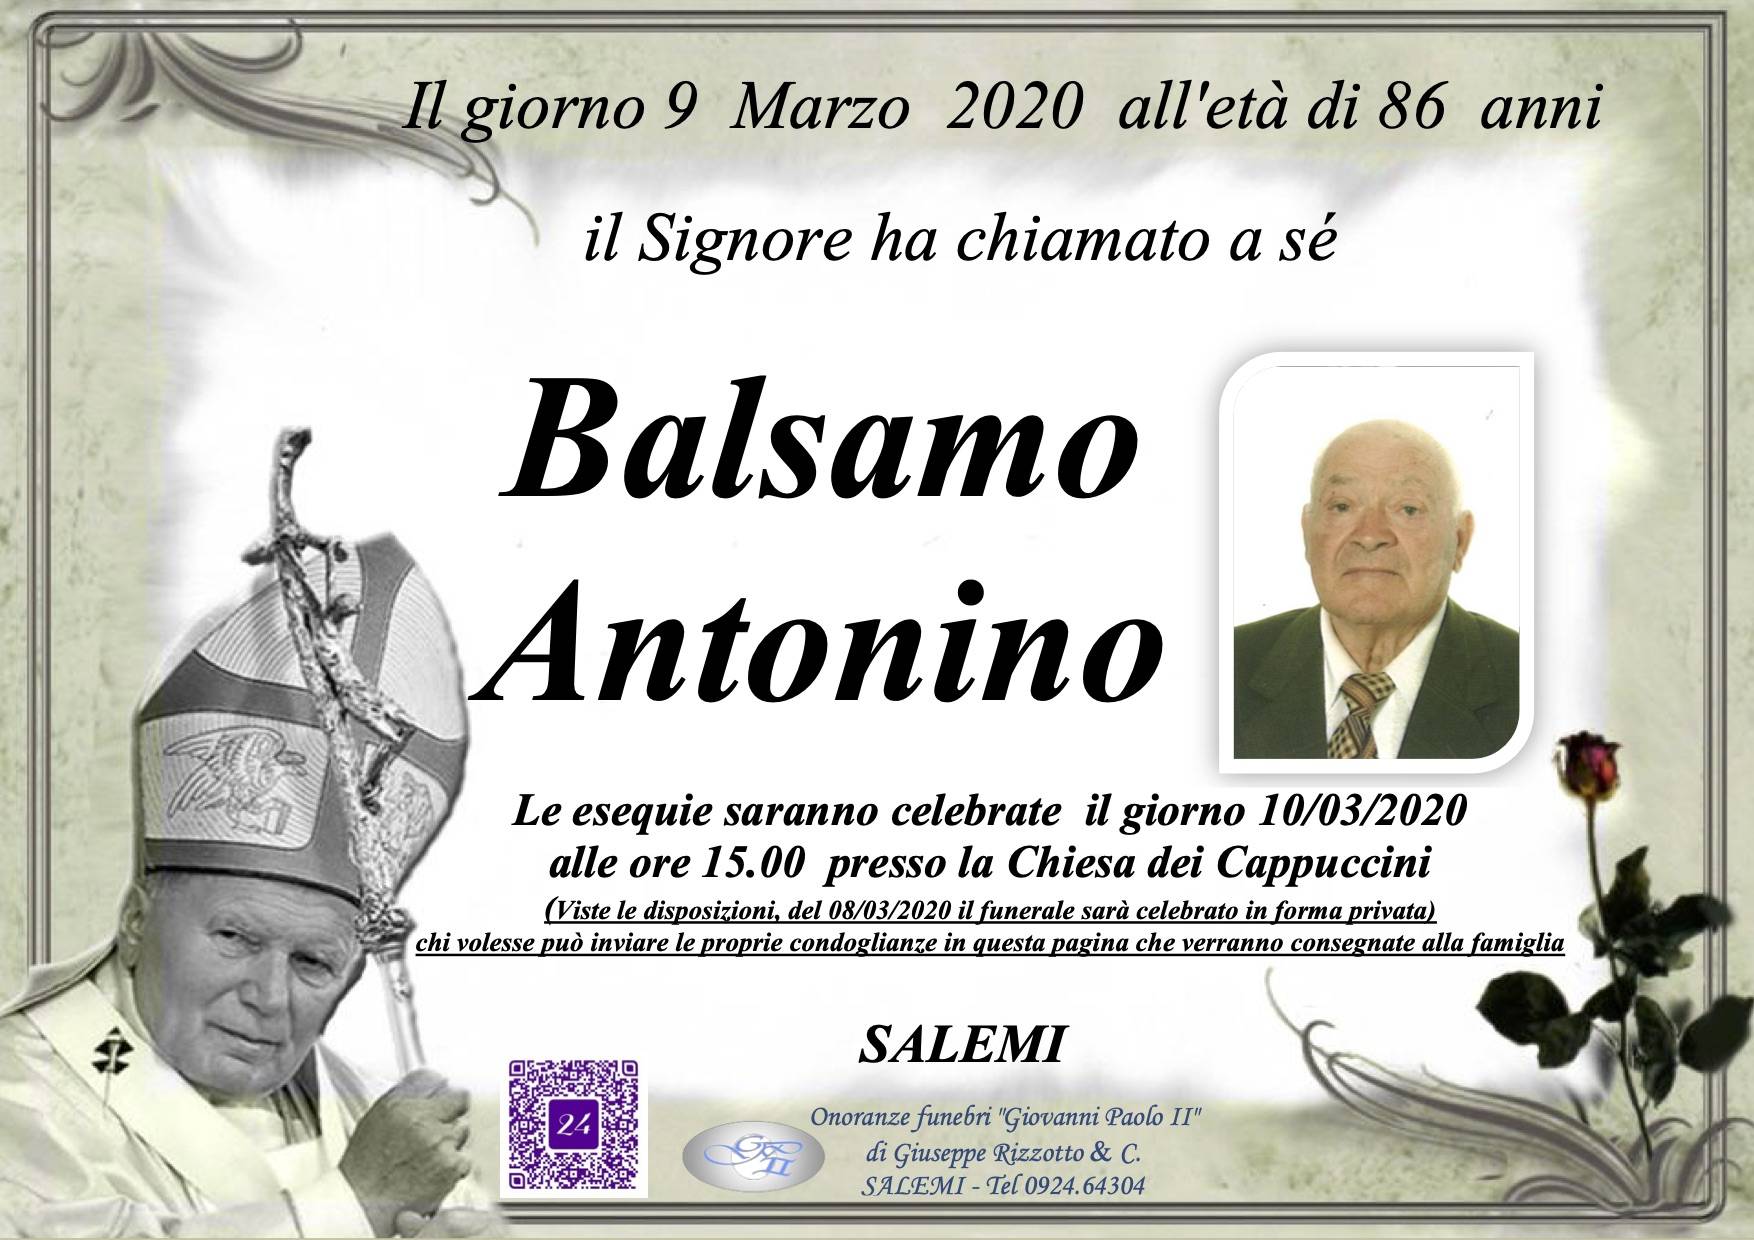 Antonino Balsamo